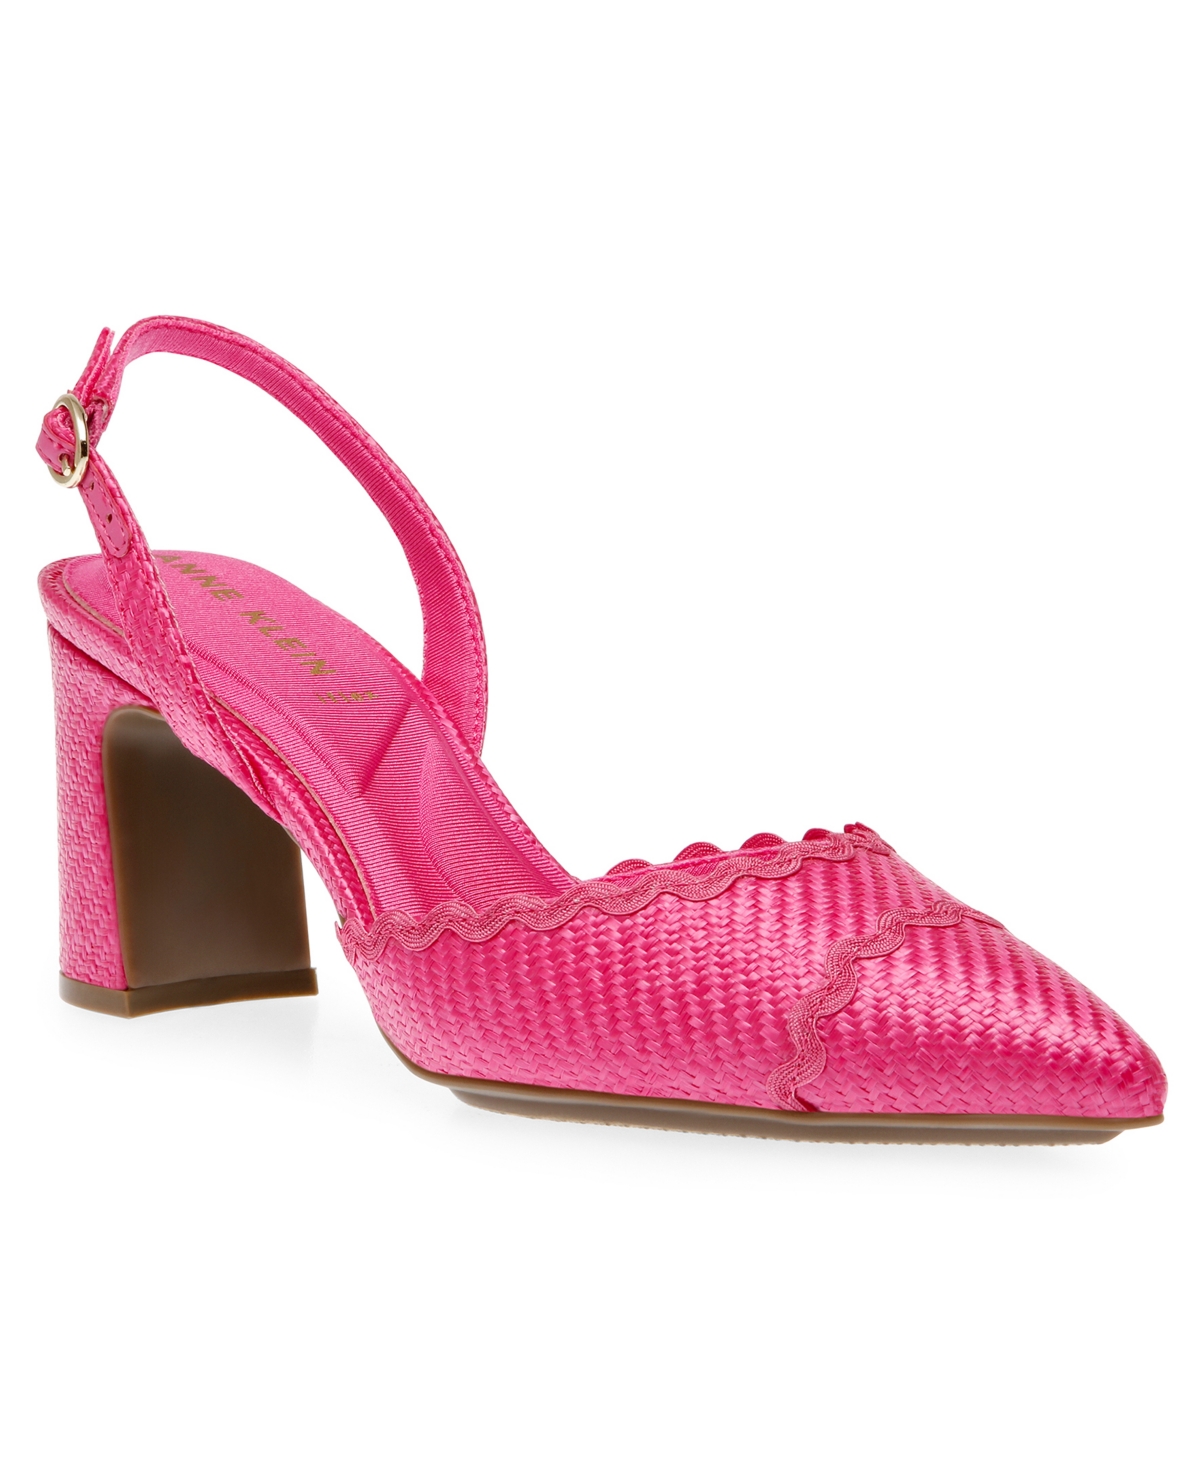 Women's Brandi Dress Heel Pumps - Pink Raffia